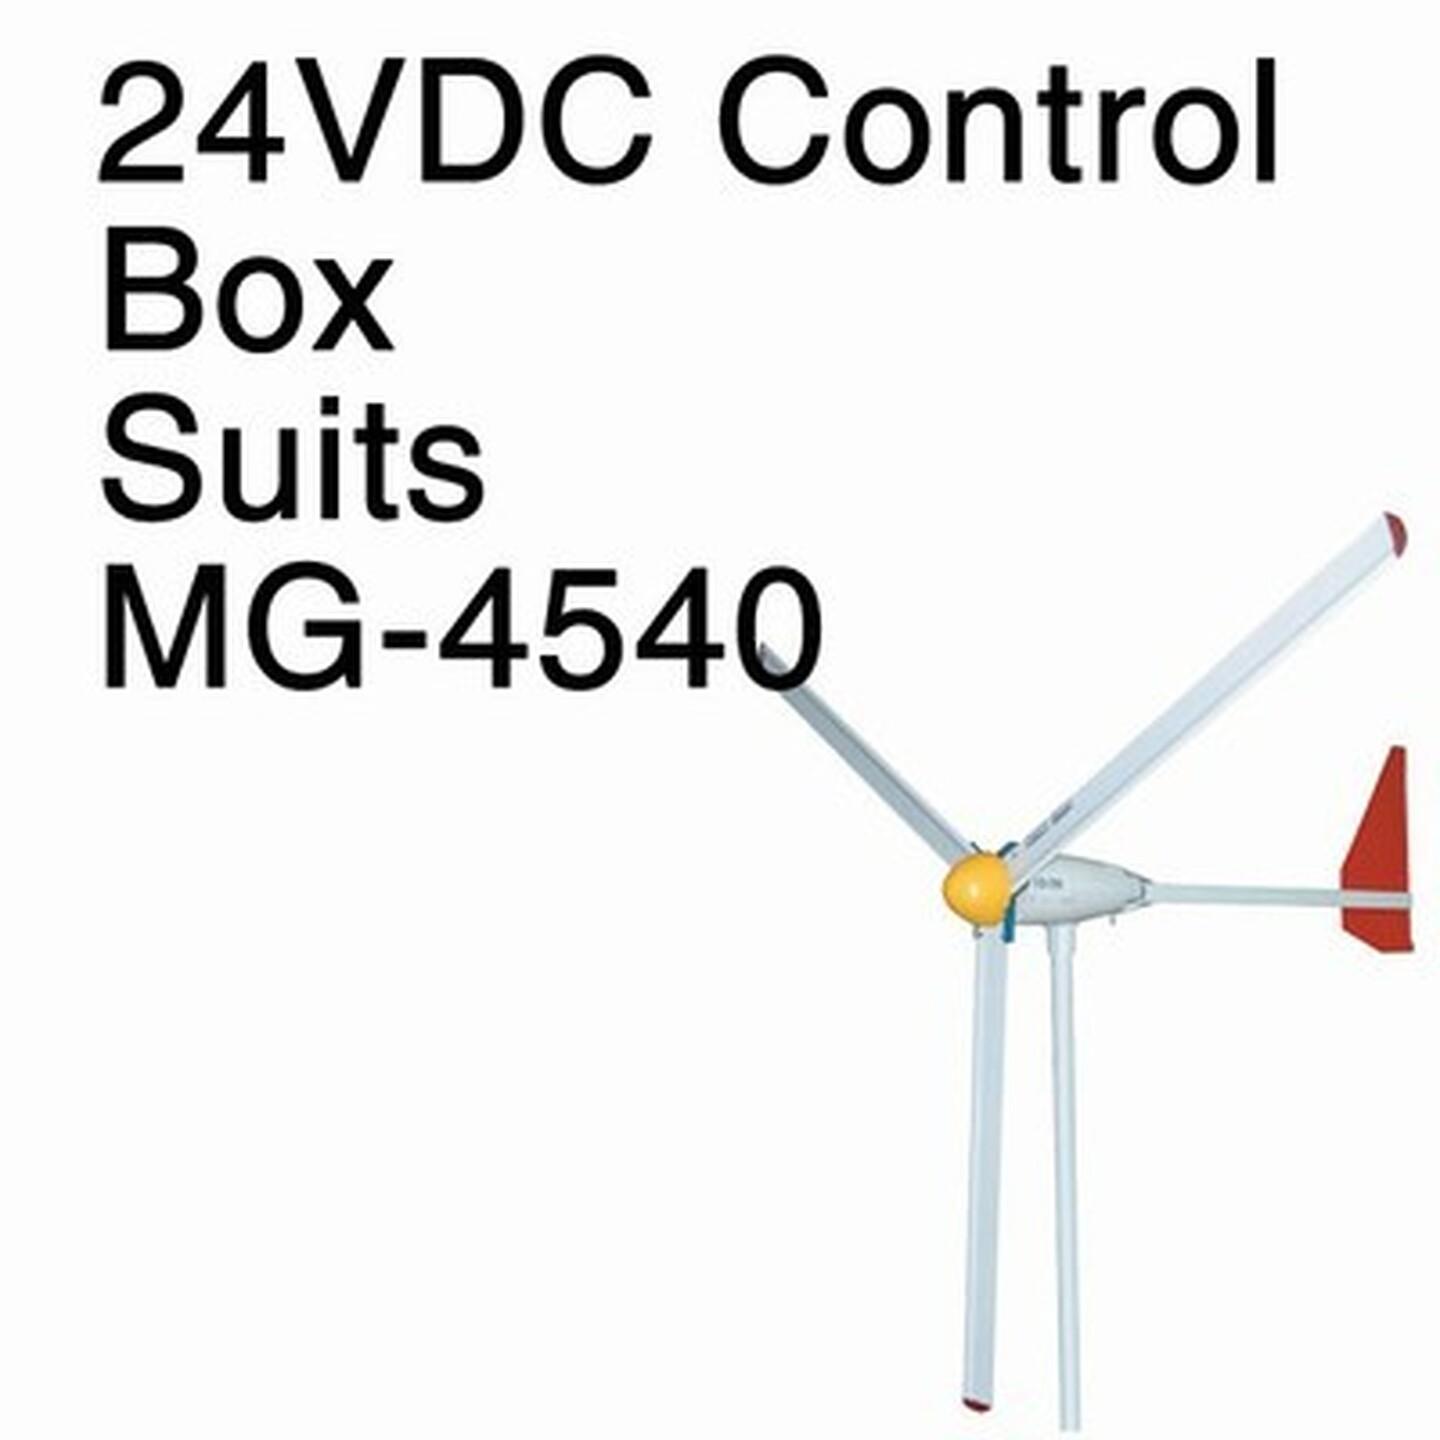 Spare 24VDC Control Box